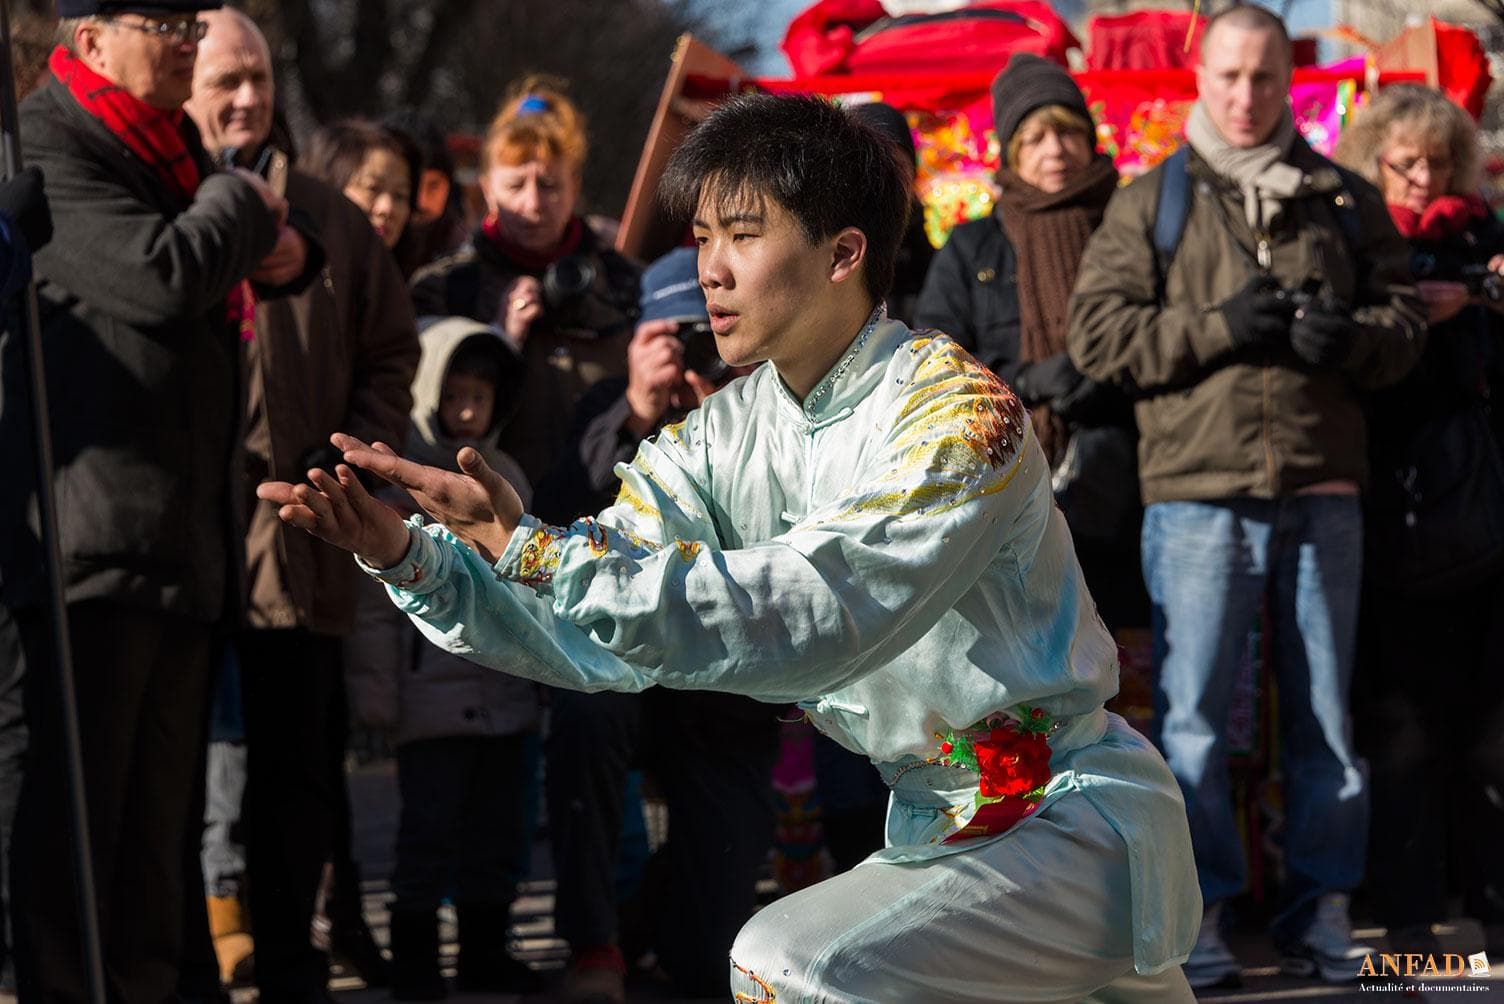 Nouvel an chinois 2013 - Démonstration d'arts martiaux dans la rue